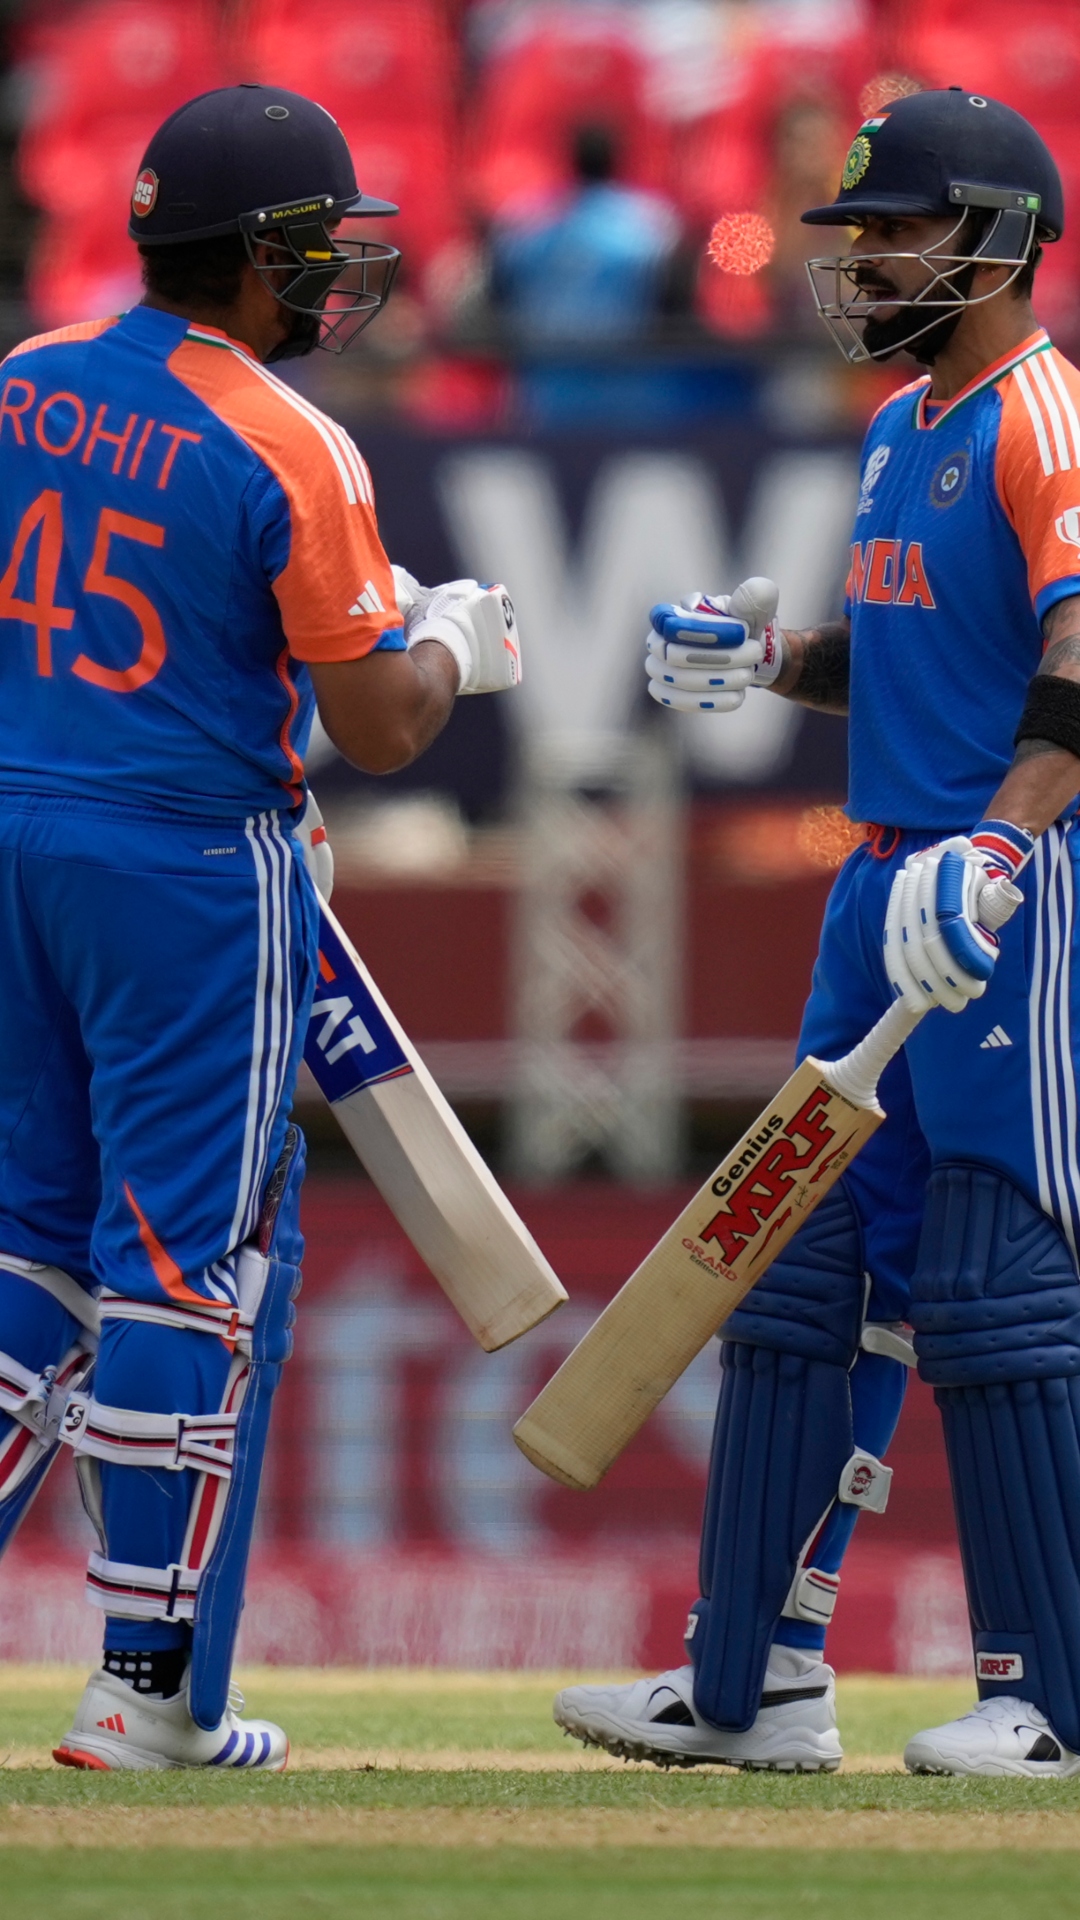 T20 World Cup के फाइनल में अब तक सबसे ज्यादा रन बनाने वाले भारतीय बल्लेबाज